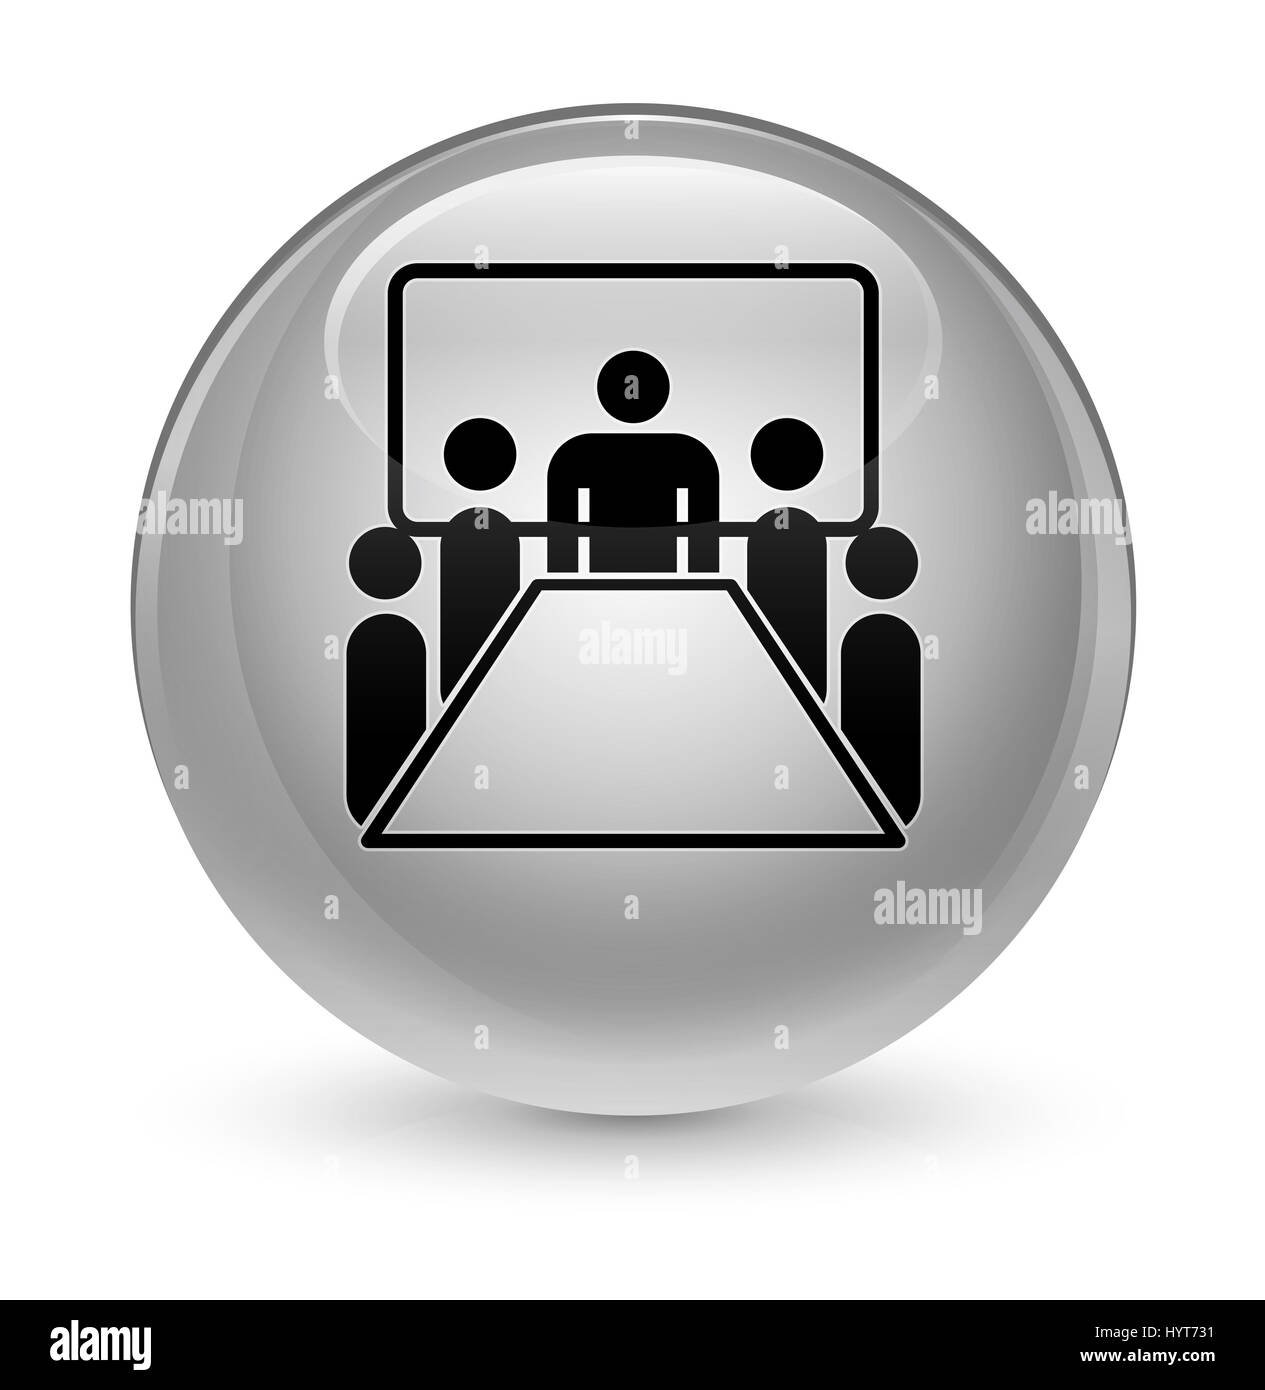 Salle de réunion isolé sur l'icône bouton rond blanc vitreux abstract illustration Banque D'Images